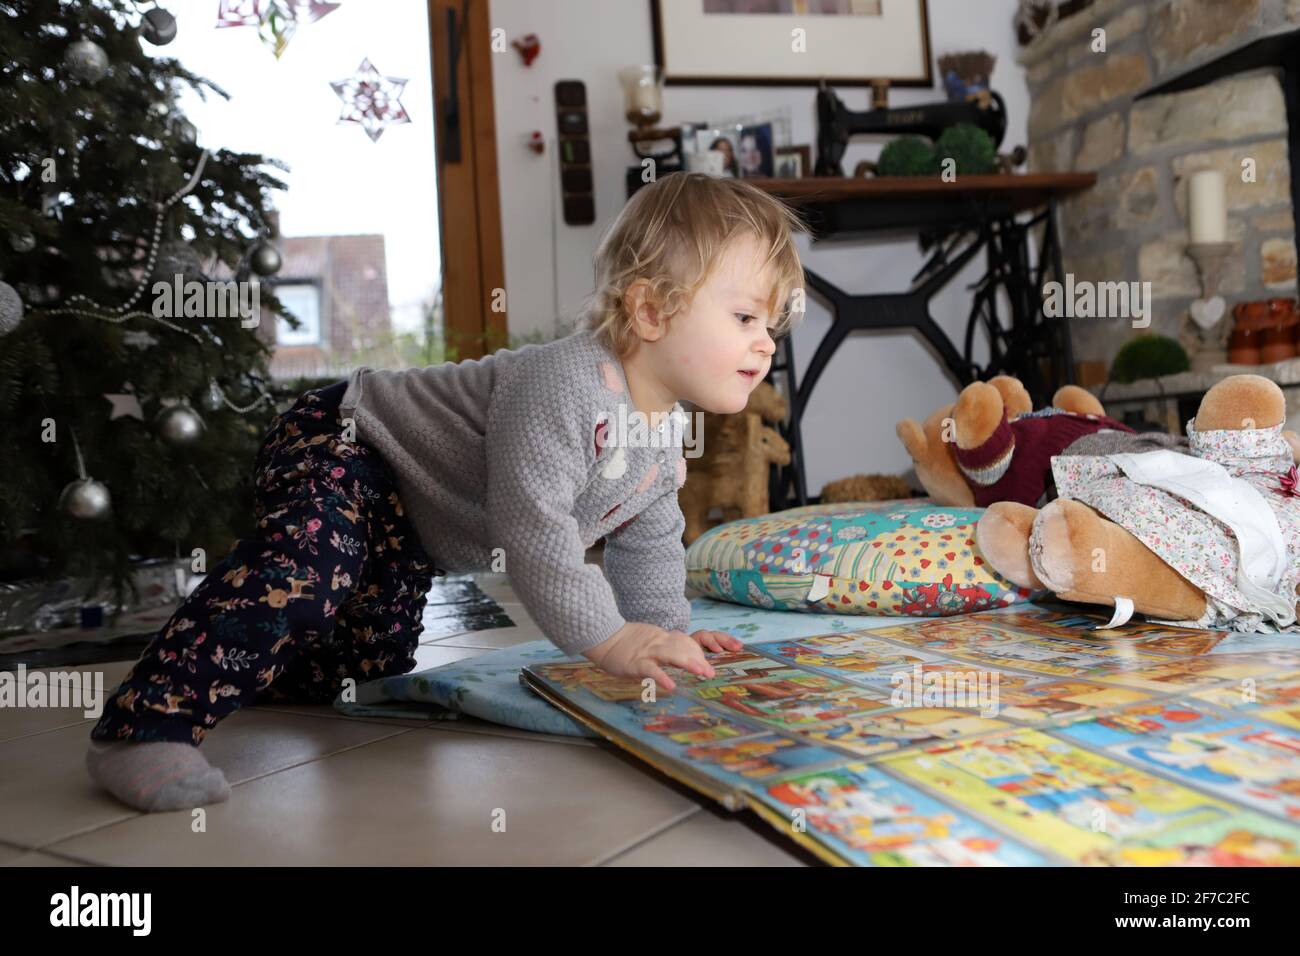 kleines Mädchen betrachtet auf dem Boden des Wohnzimmers ein großes Bilderbuch - little girl looking at big picture book on the floor of living room Stock Photo